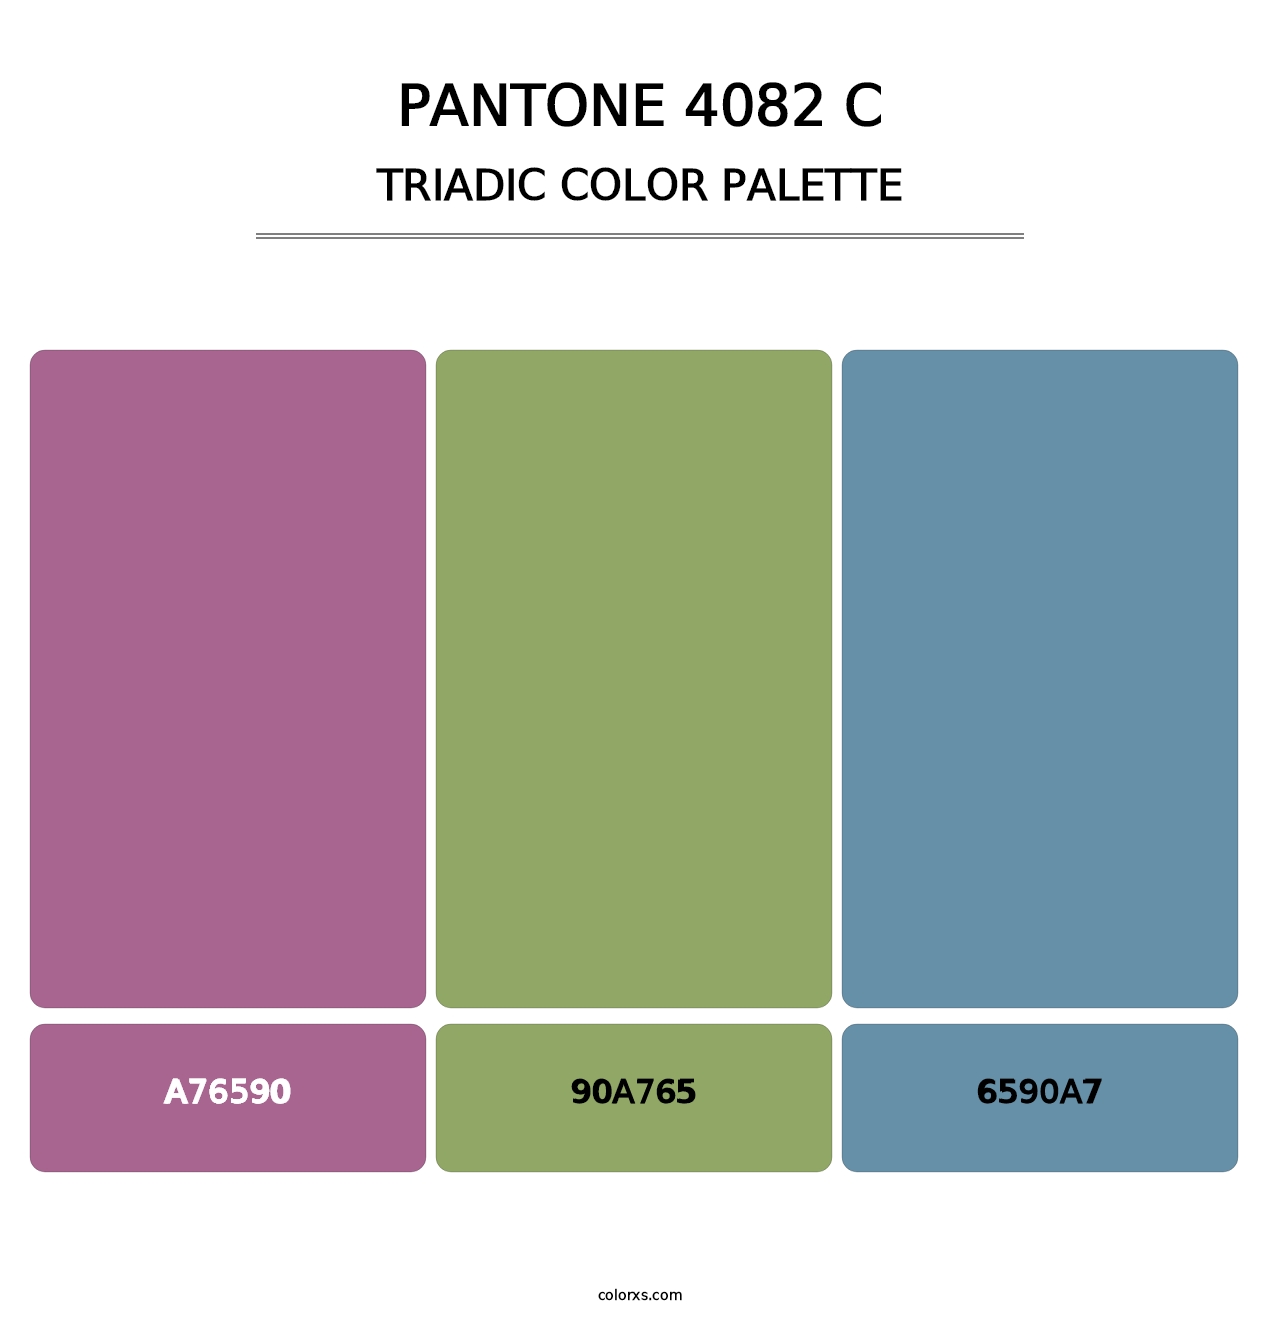 PANTONE 4082 C - Triadic Color Palette